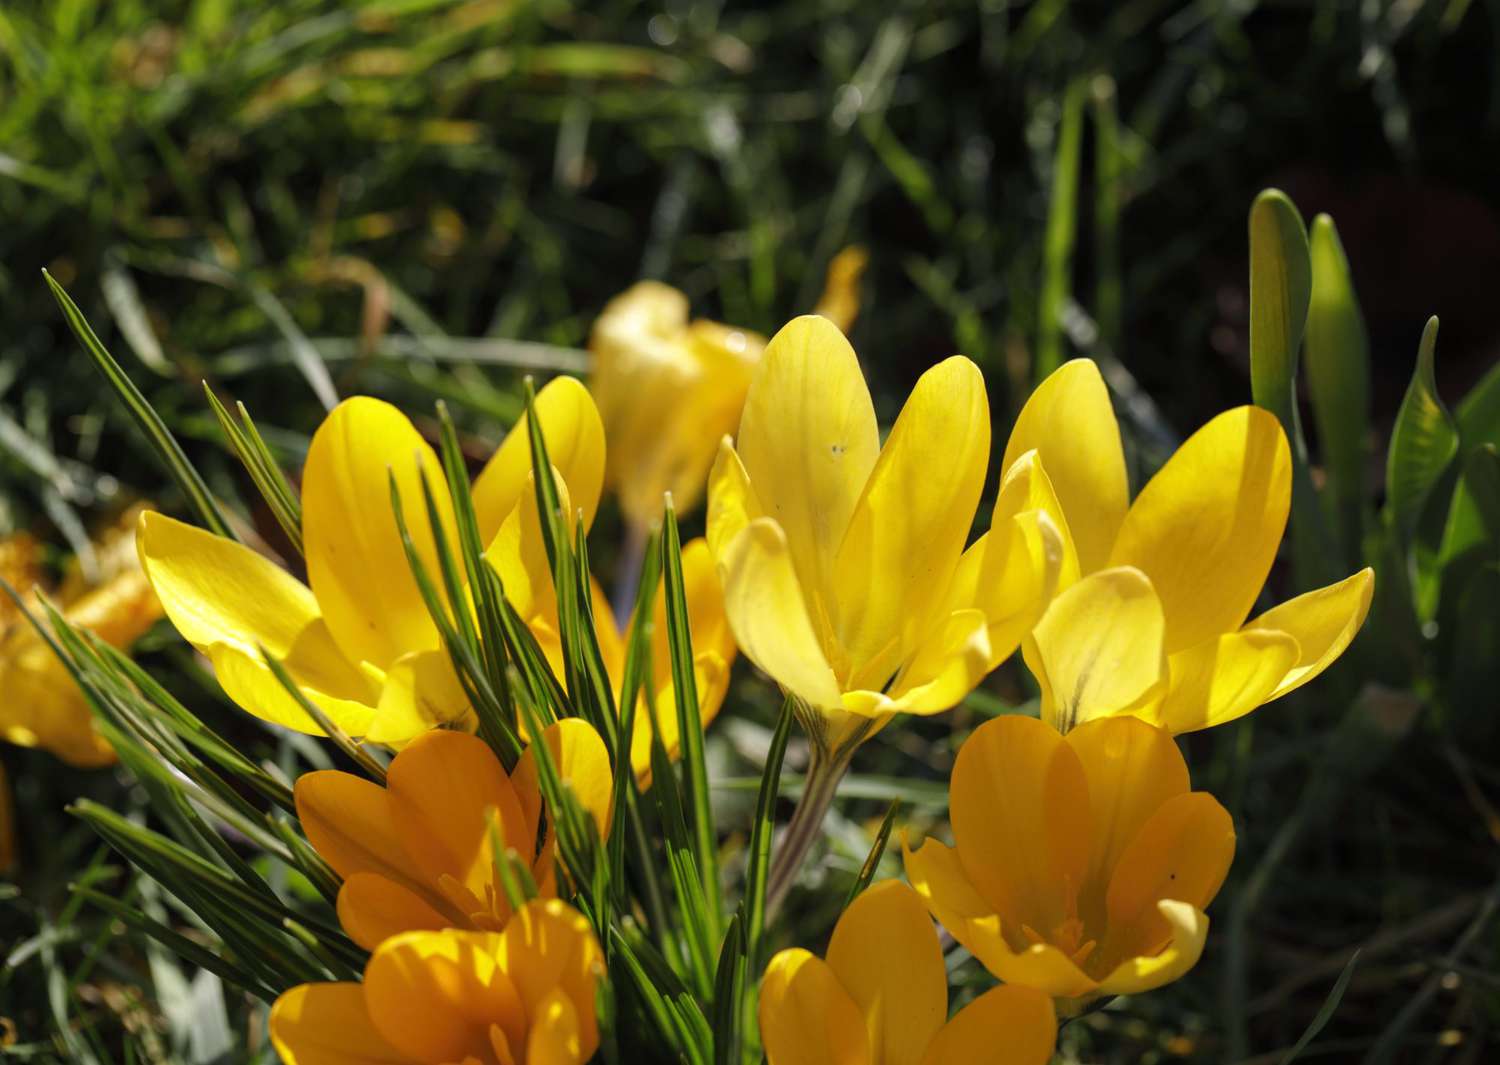 yellow golden crocus flowers blooming